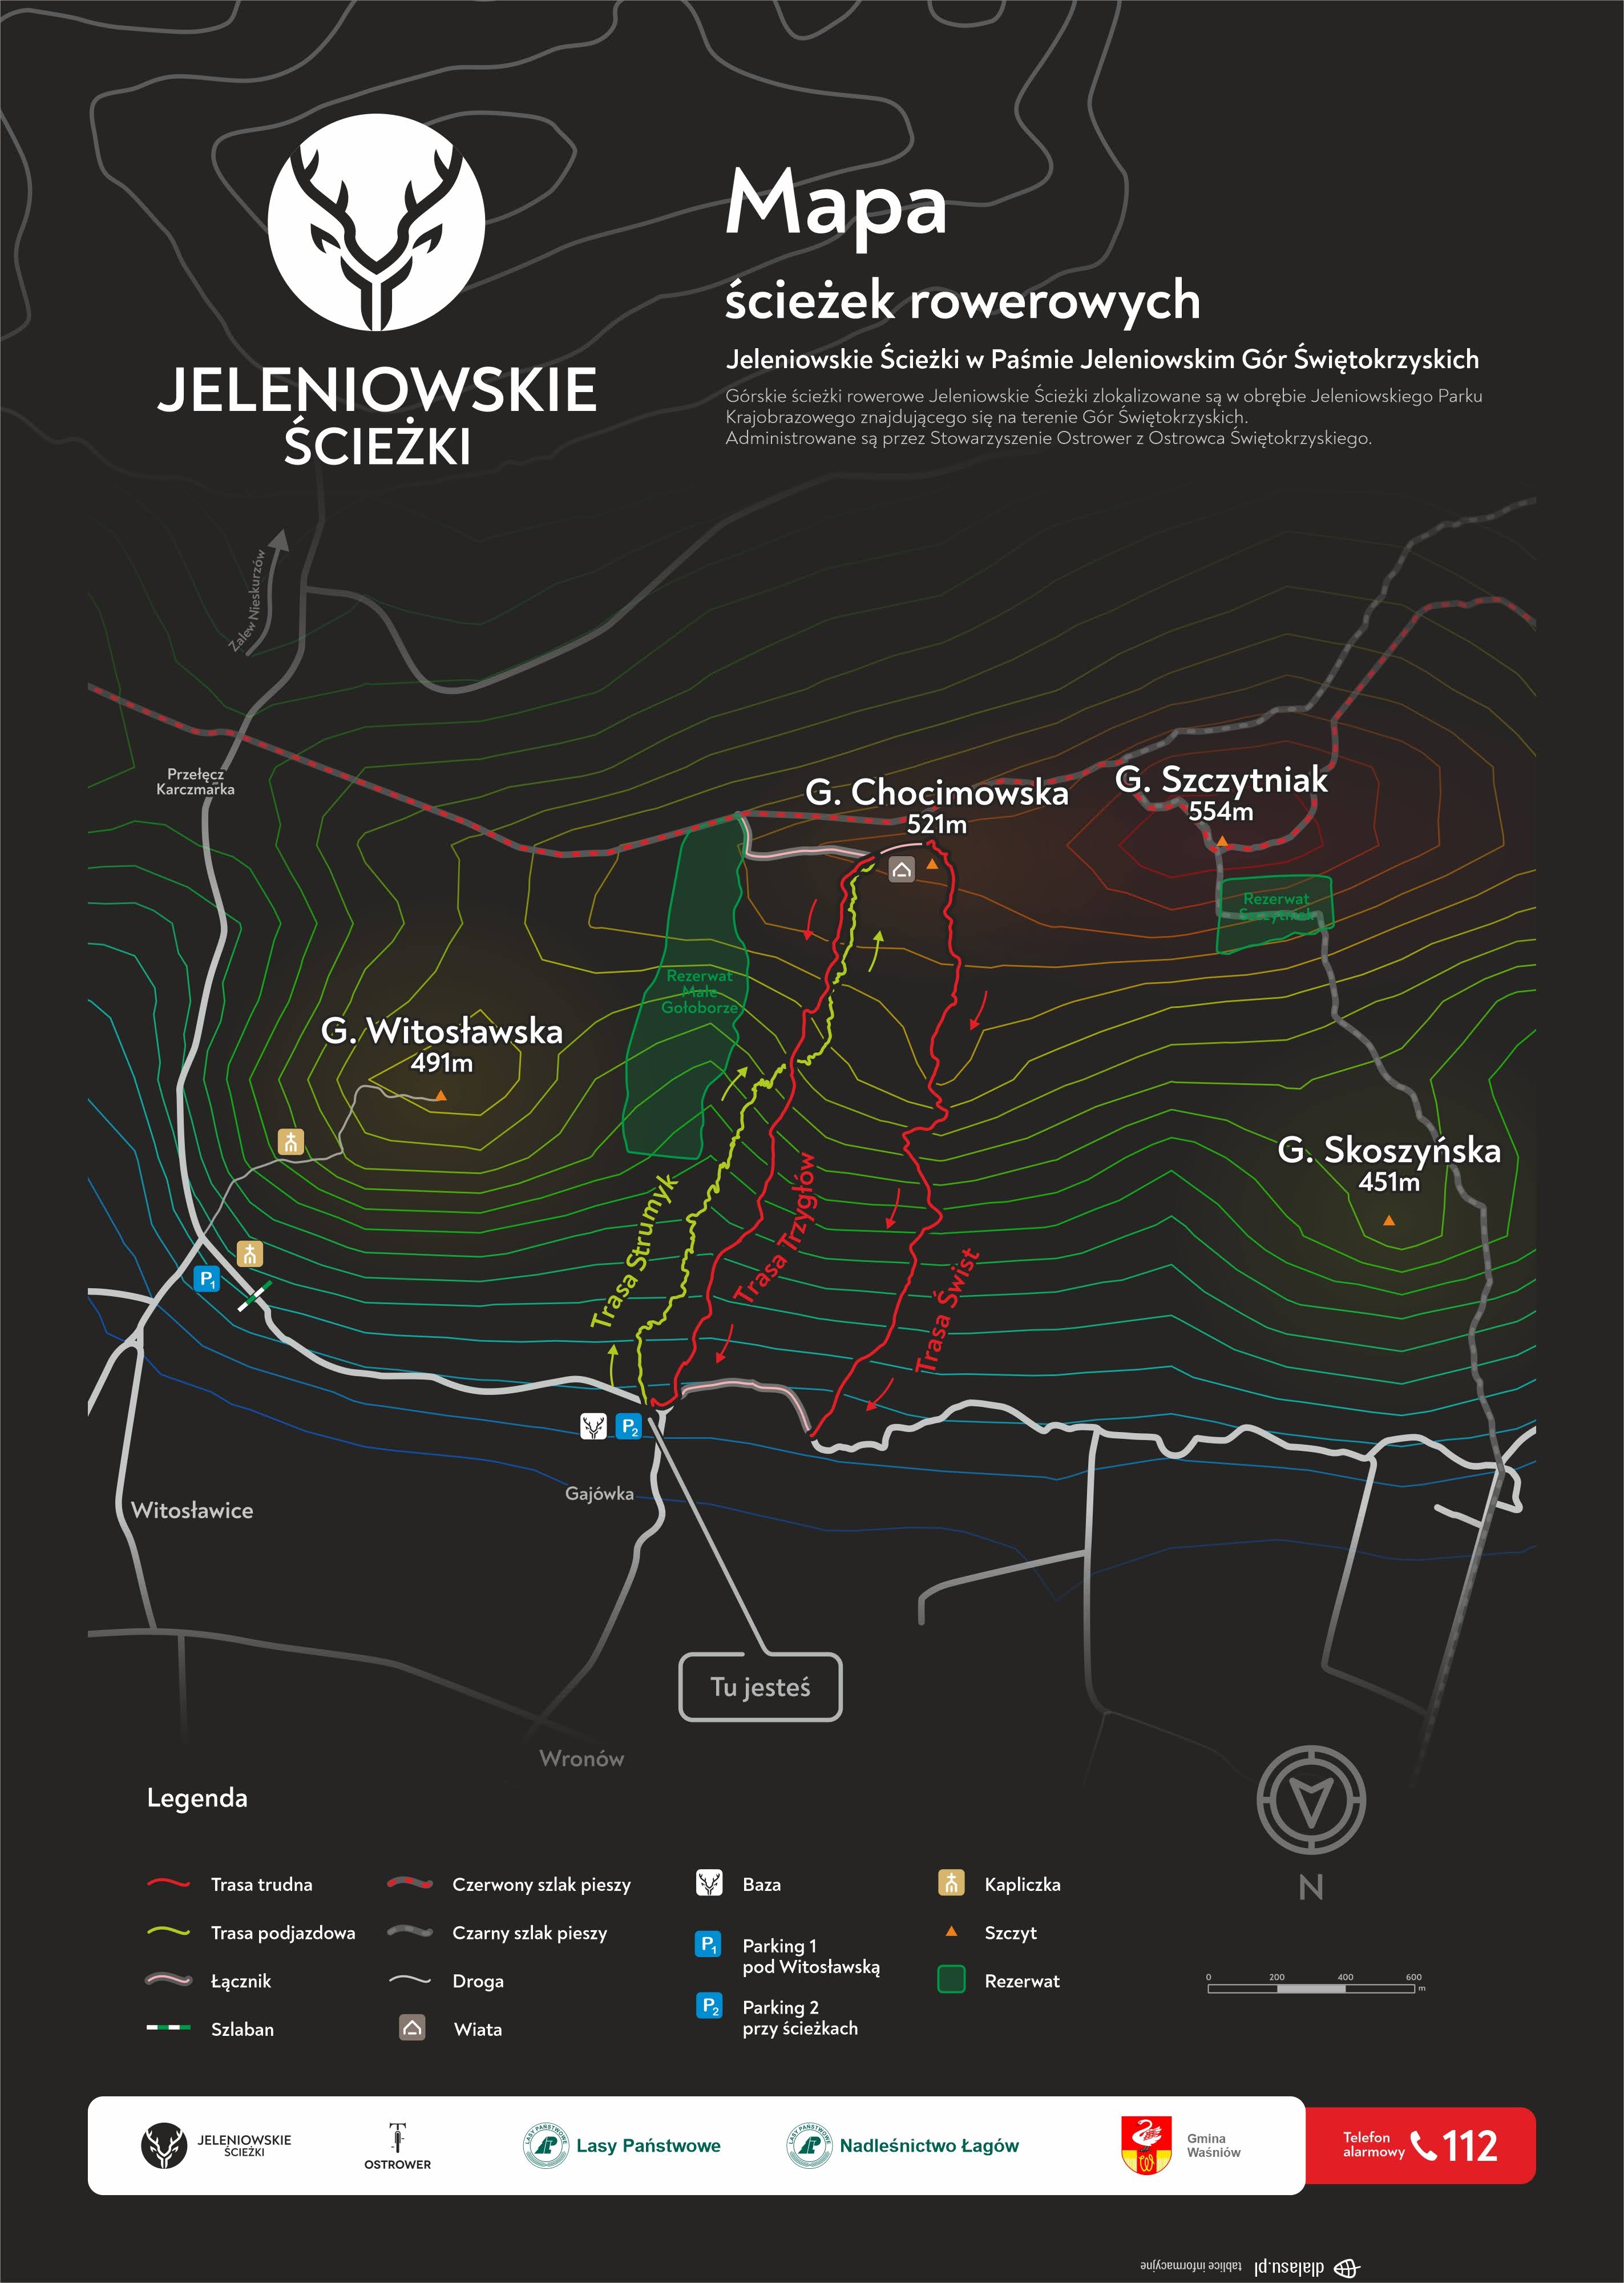 Jeleniowskie ścieżki - mapa